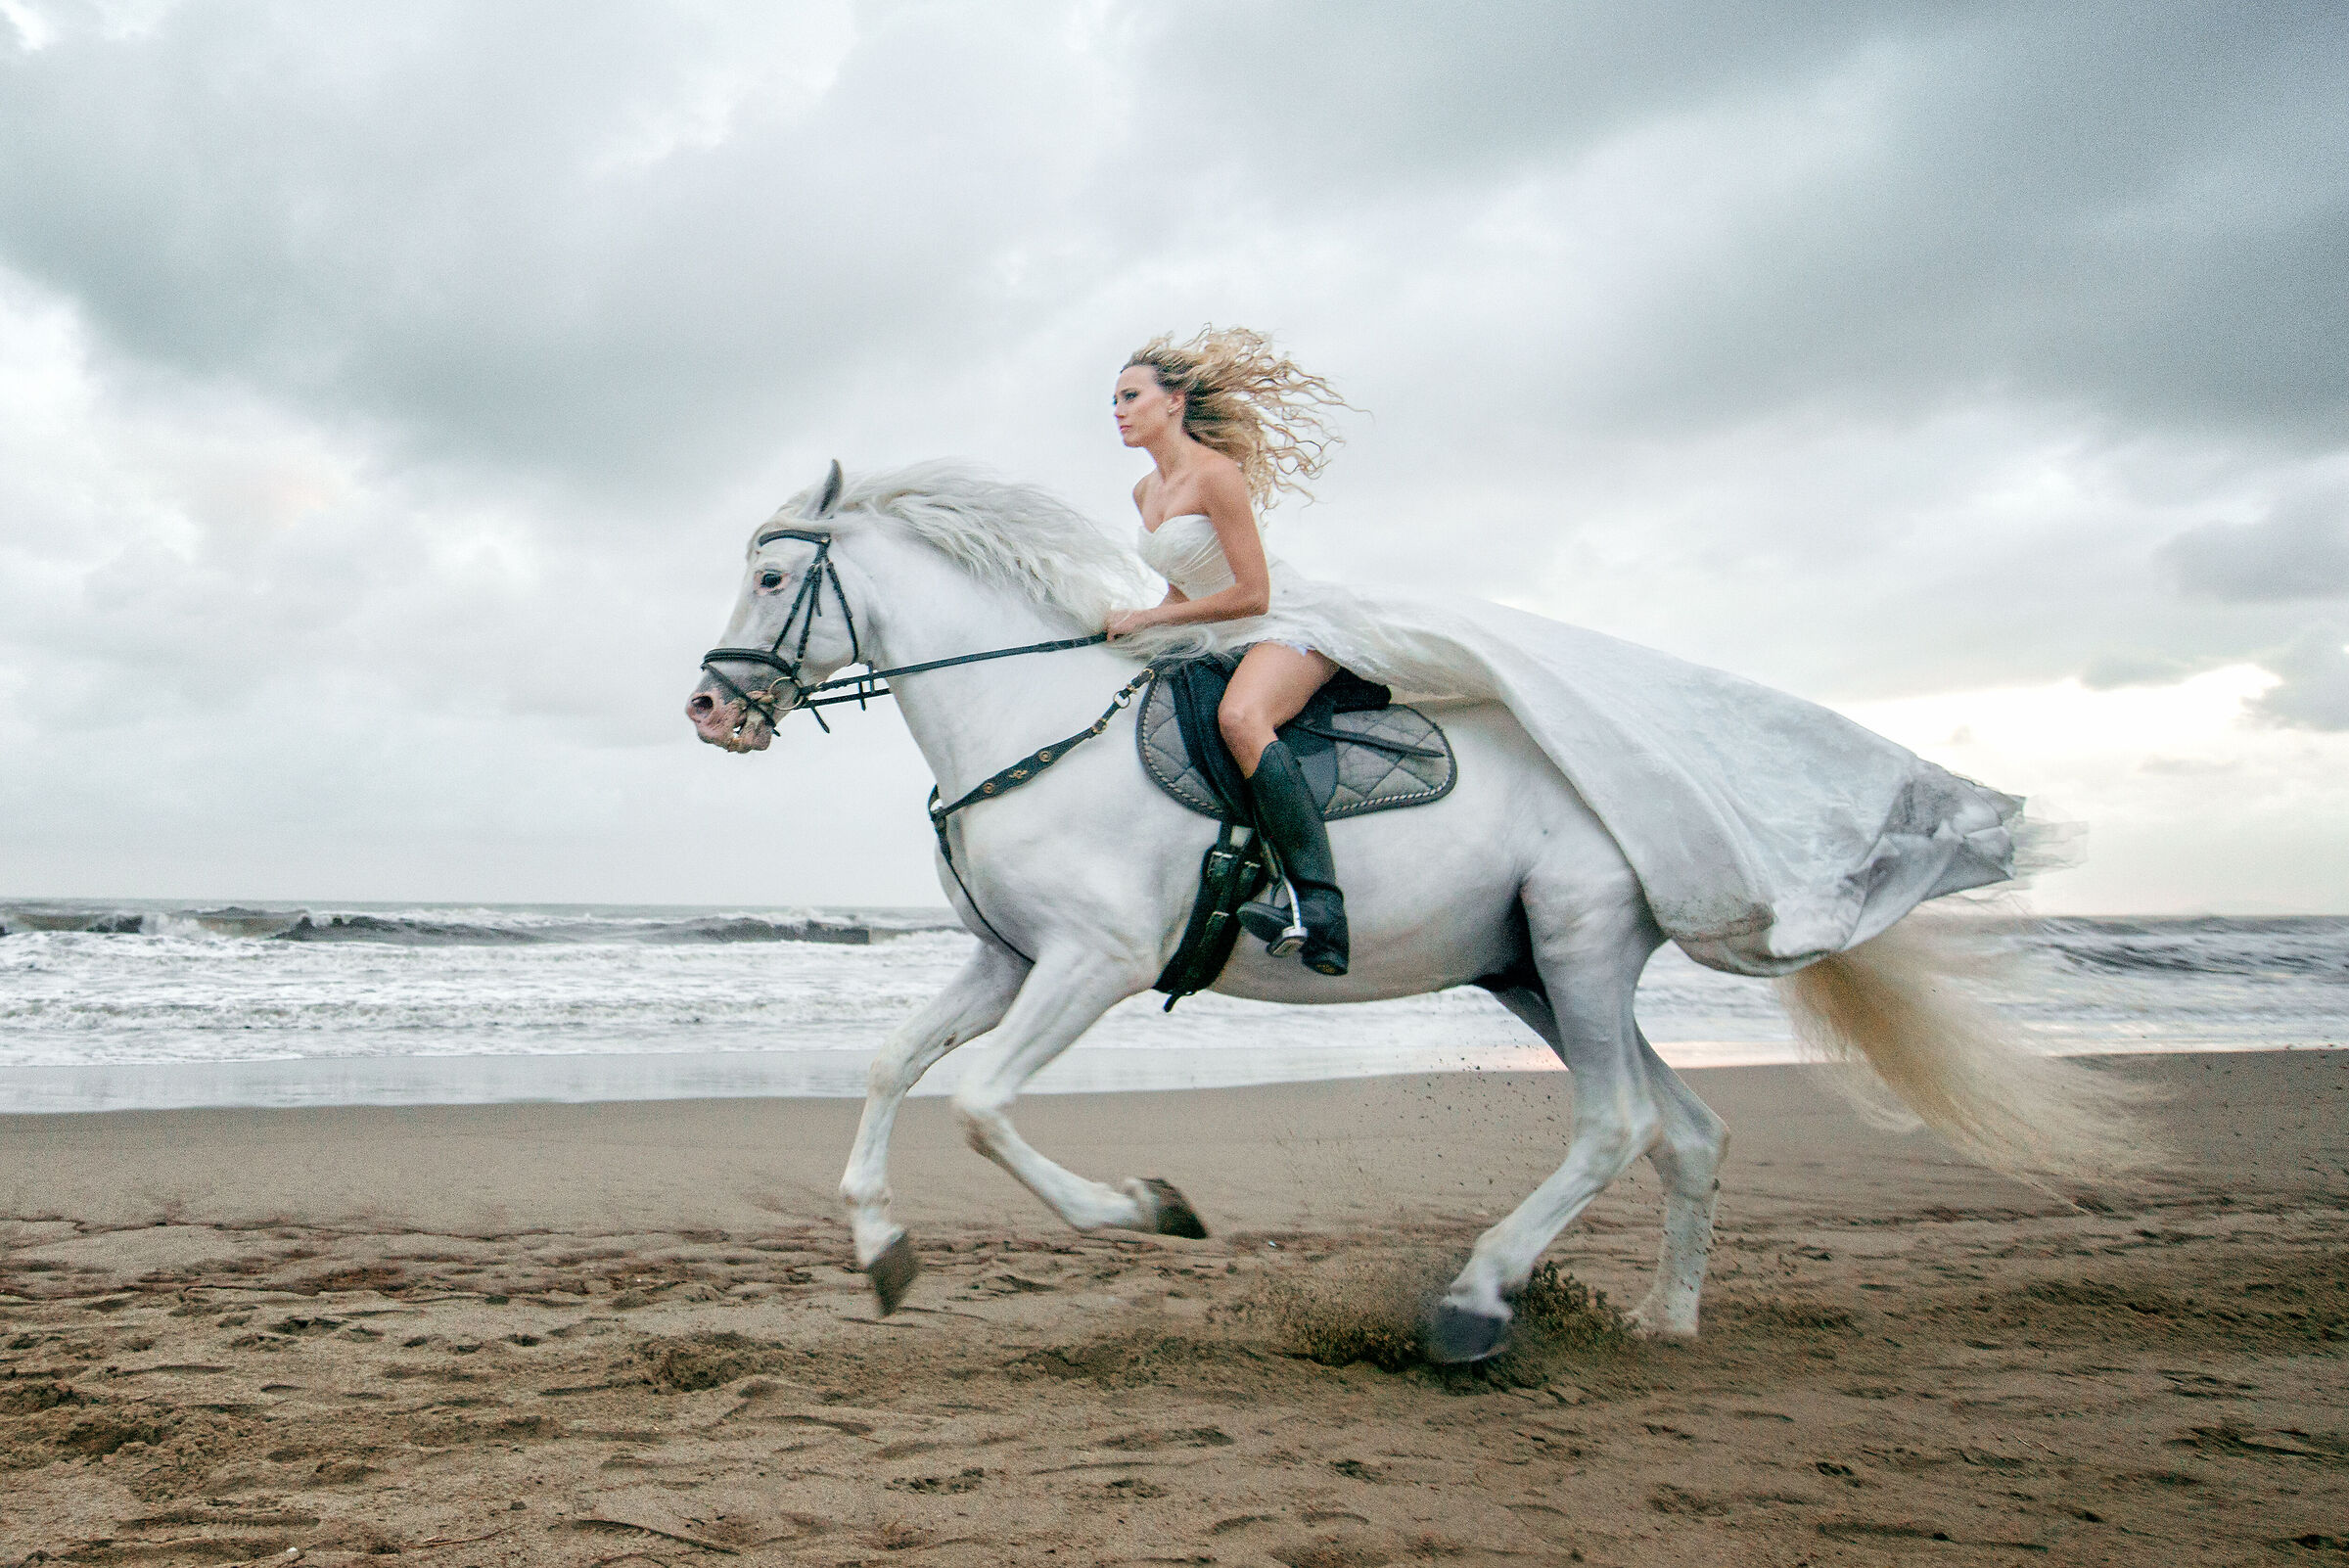 Скачут лошадки песня. Девушка на коне. Фотосессия с белой лошадью. Девушка скачет на коне. Девушка на коне верхом.